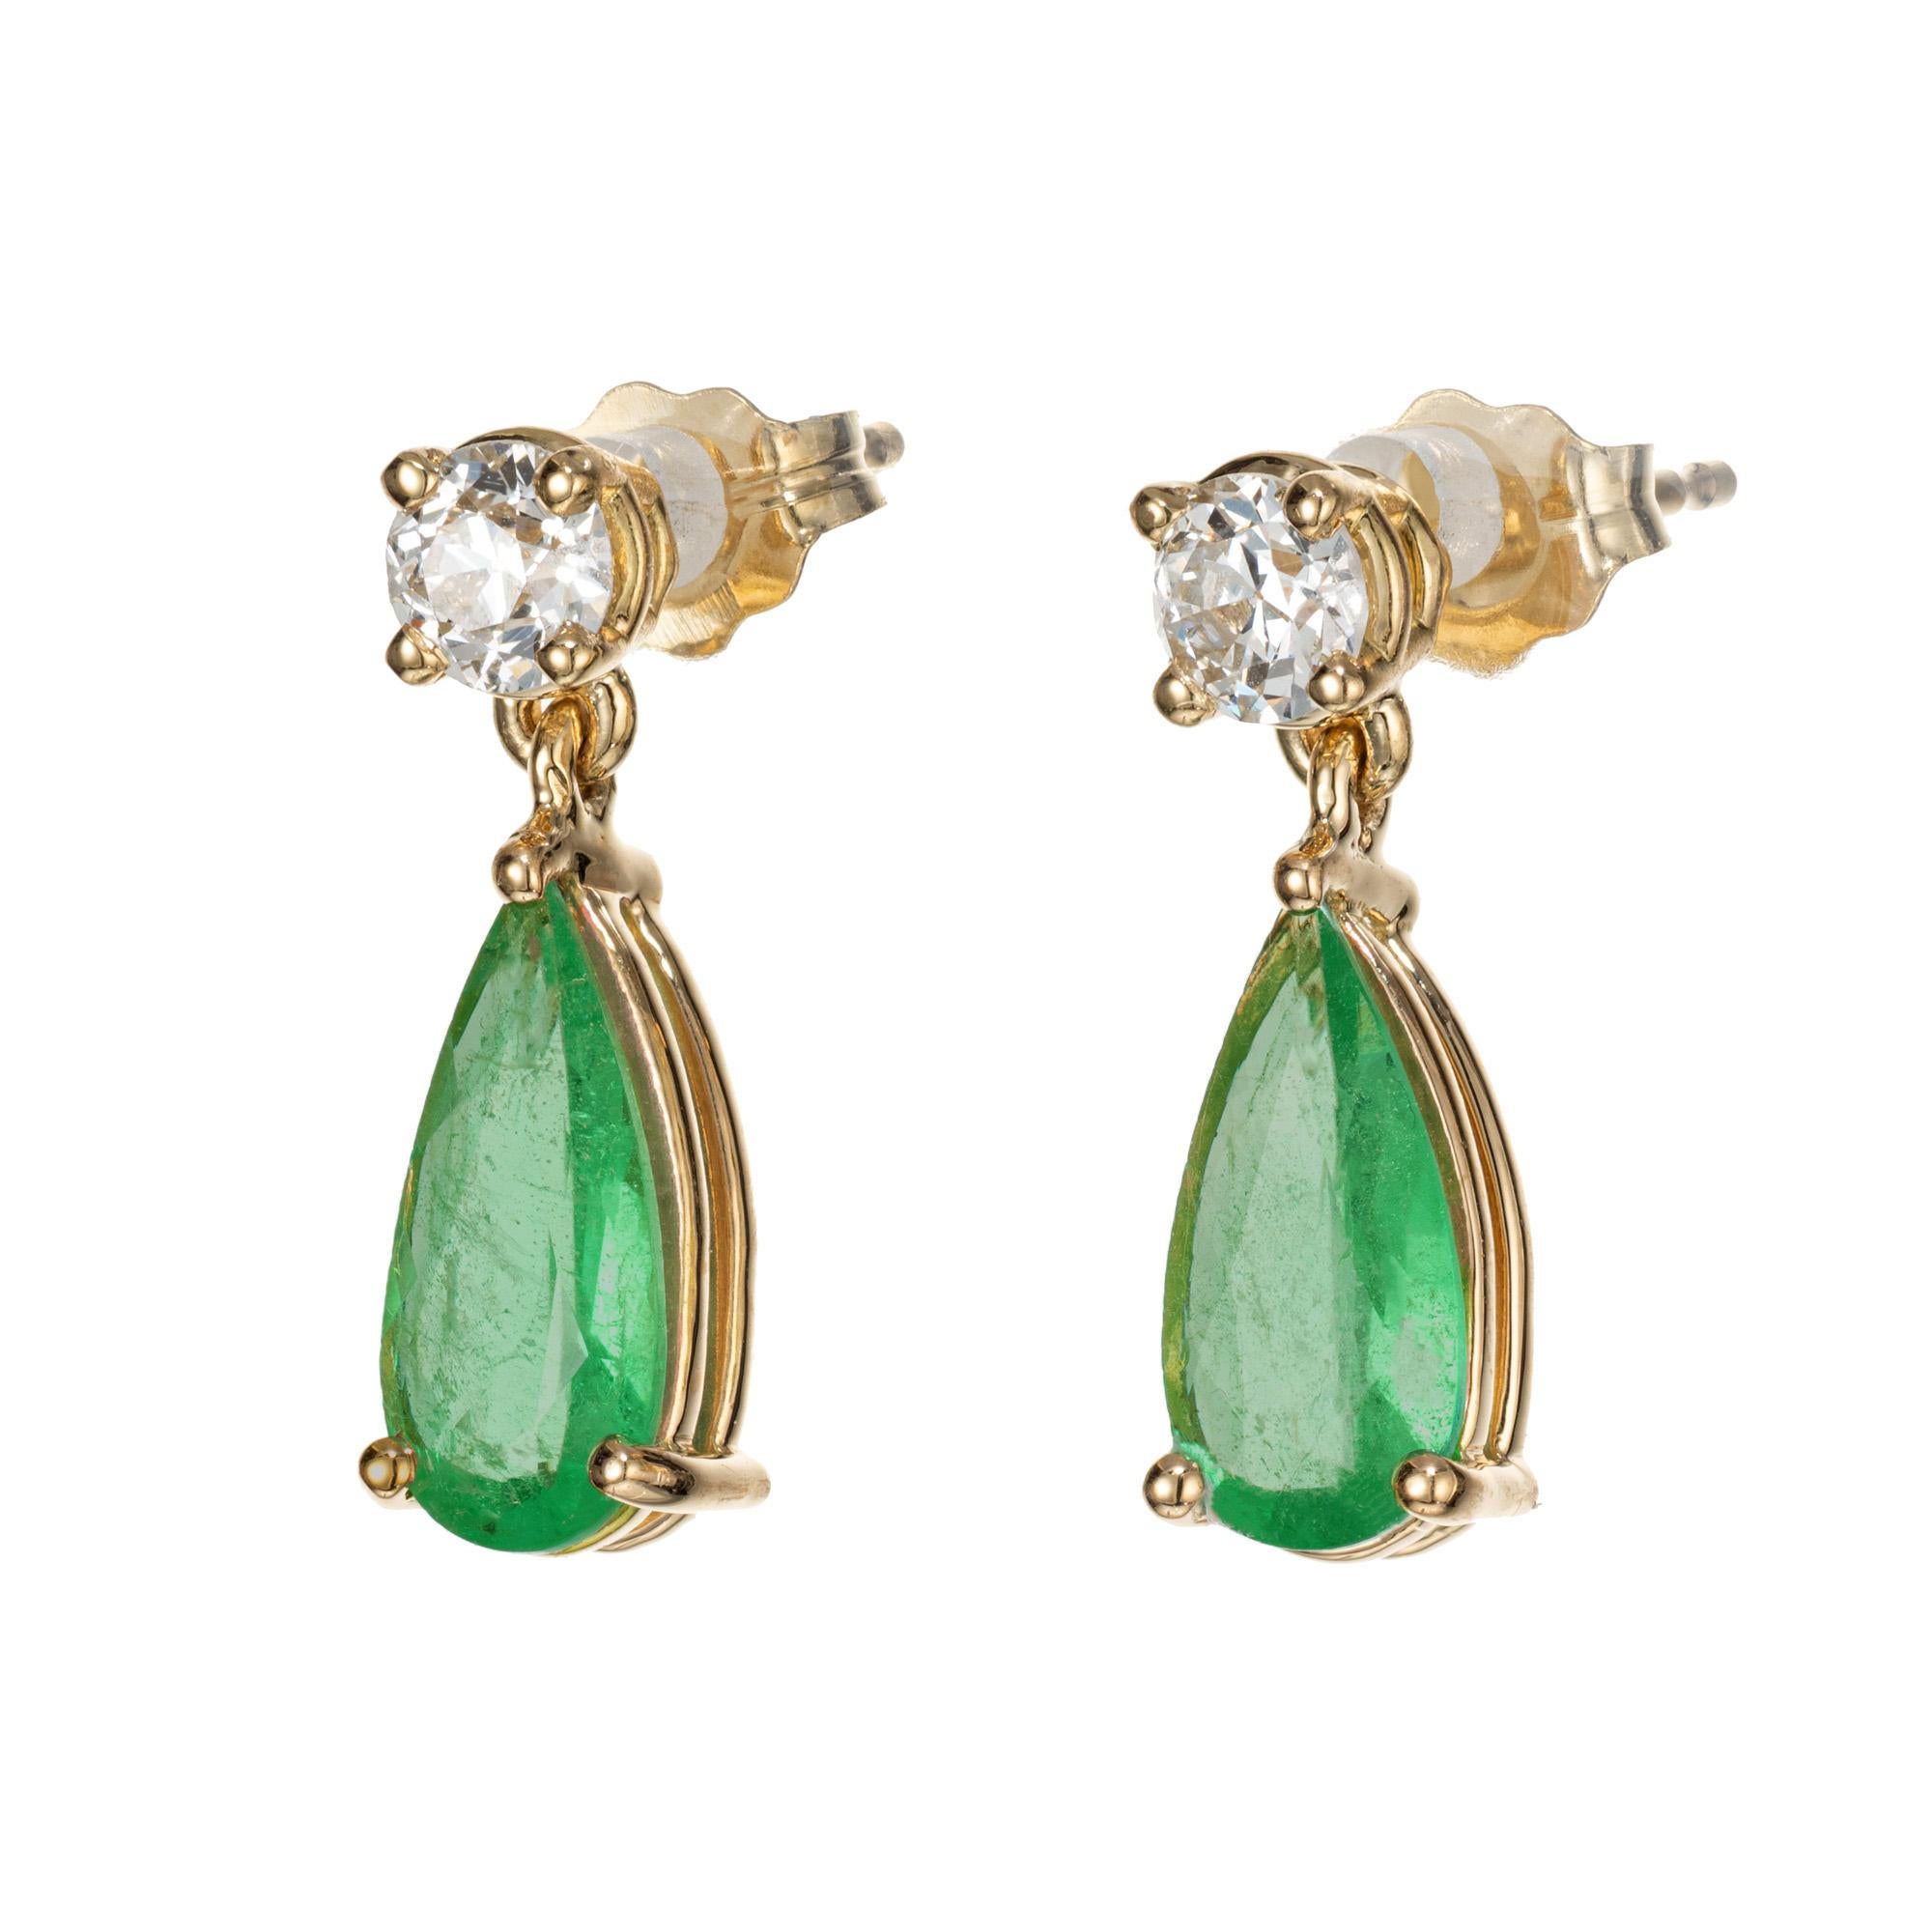 GIA-zertifizierte Smaragd-Diamant-Ohrringe. GIA-zertifizierte birnenförmige grüne Smaragde mit je einem runden Diamanten darüber. Entworfen und hergestellt in der Werkstatt von Peter Suchy.

2 birnenförmige grüne Smaragde, MI ca. 1,21cts GIA